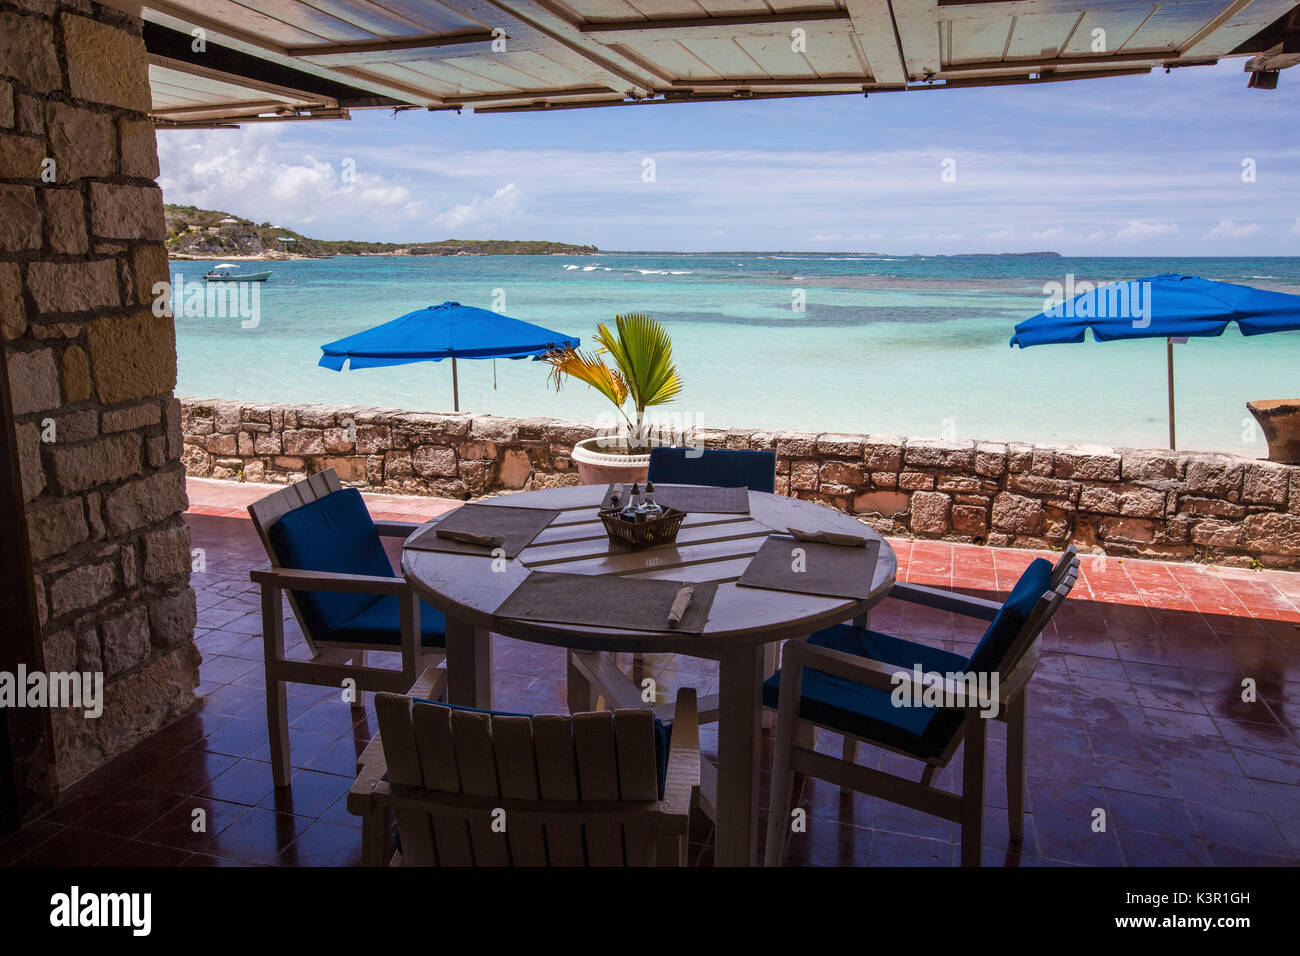 Vue sur la mer turquoise des Caraïbes à partir d'une table à manger d'un resort Long Bay Antigua-et-Barbuda Antilles Îles sous le vent Banque D'Images